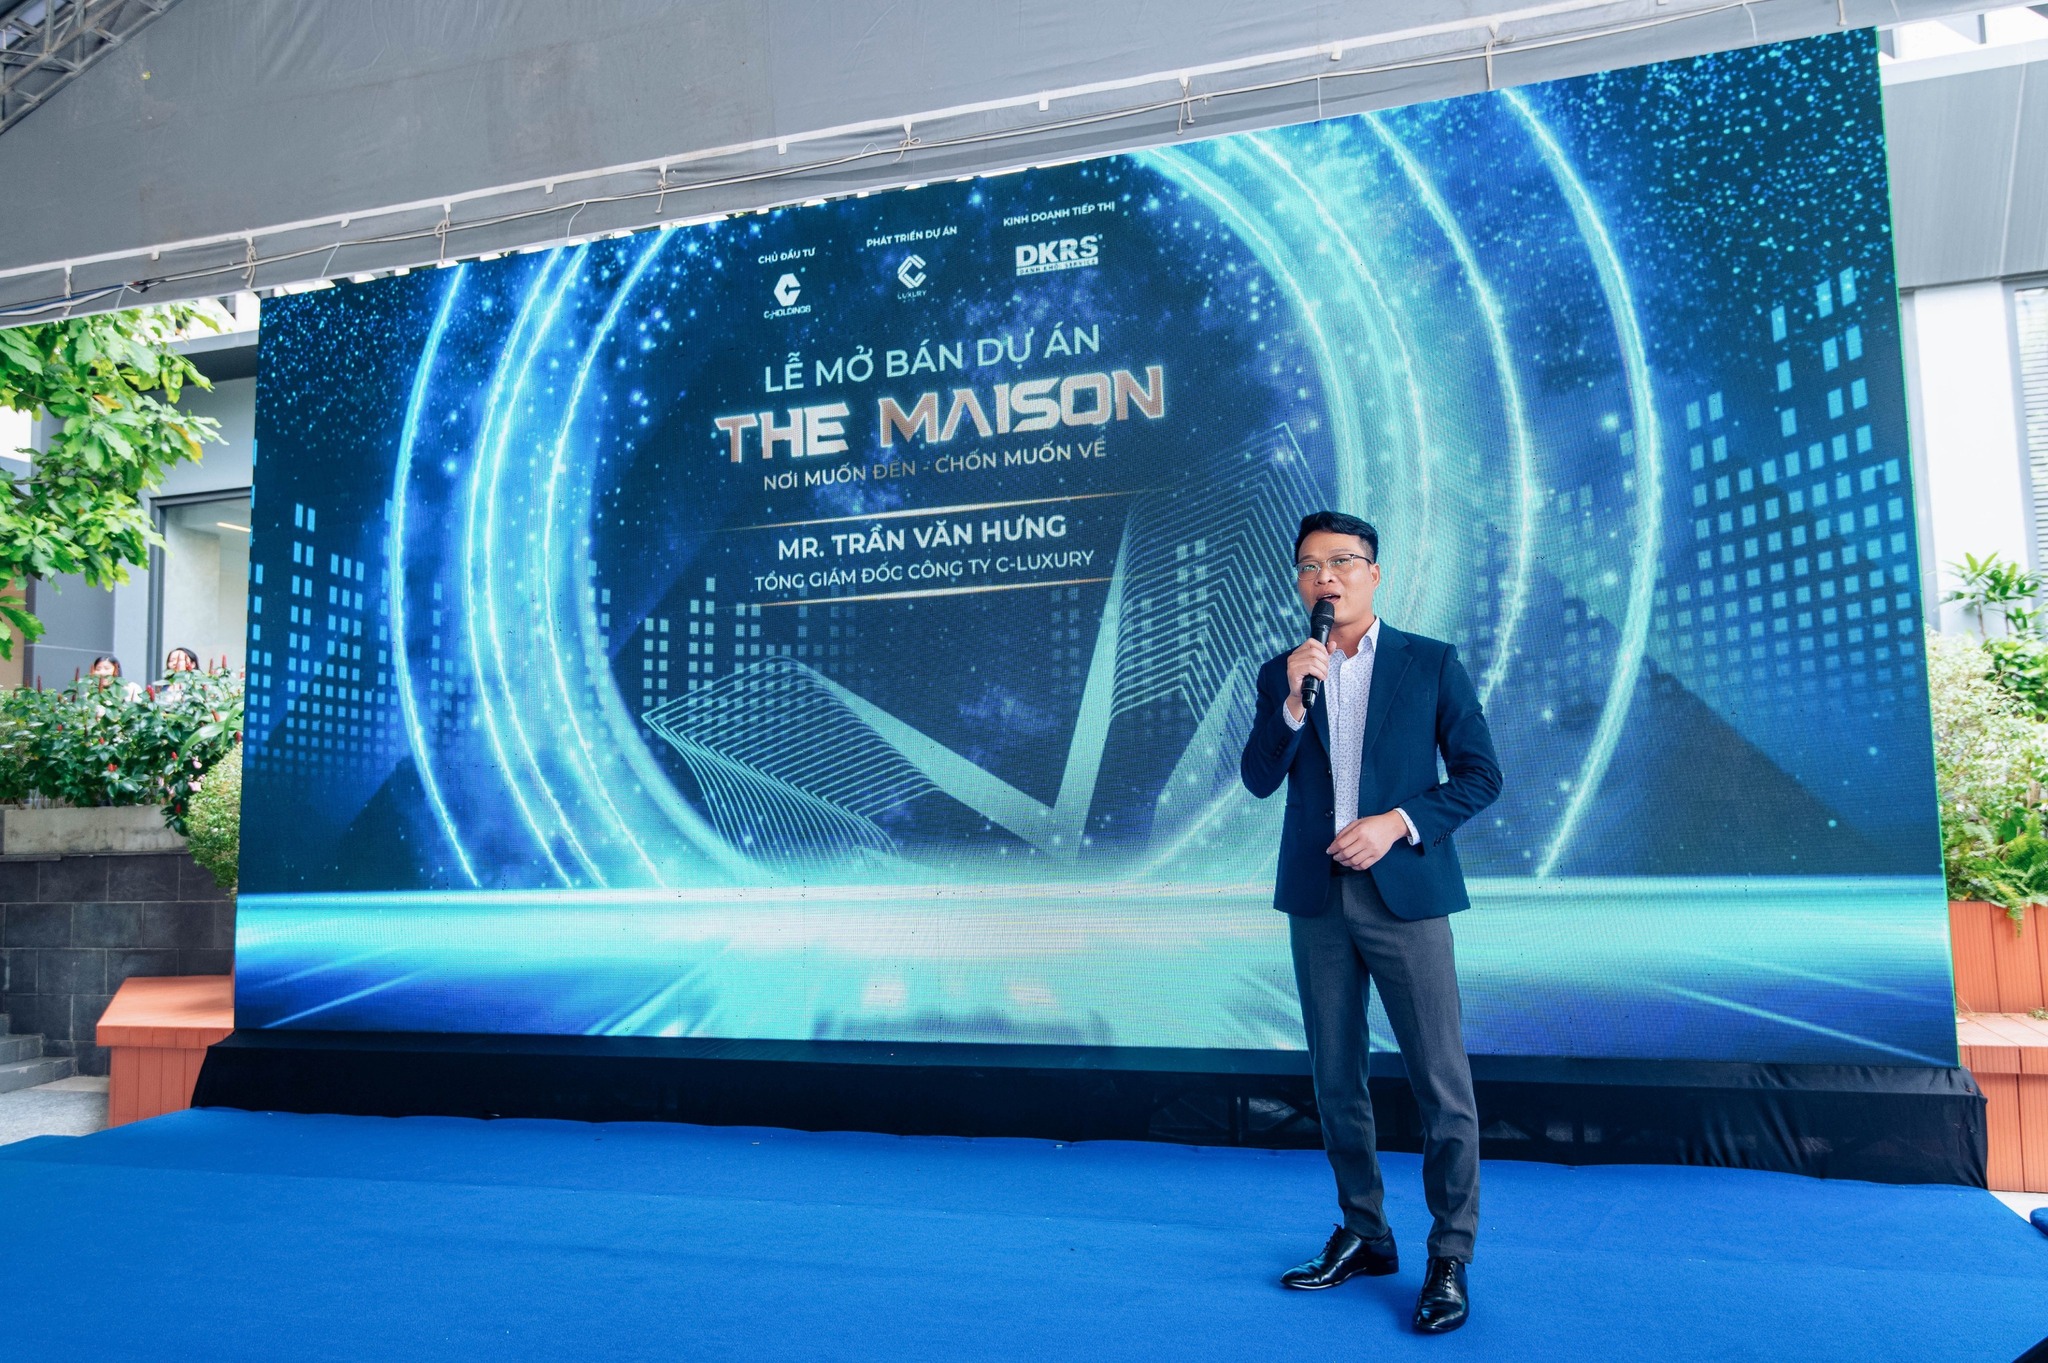 Ông. Trần Văn Hưng – Tổng giám đốc C-Luxury phát biểu tại sự kiện. Ảnh. C-Holdings